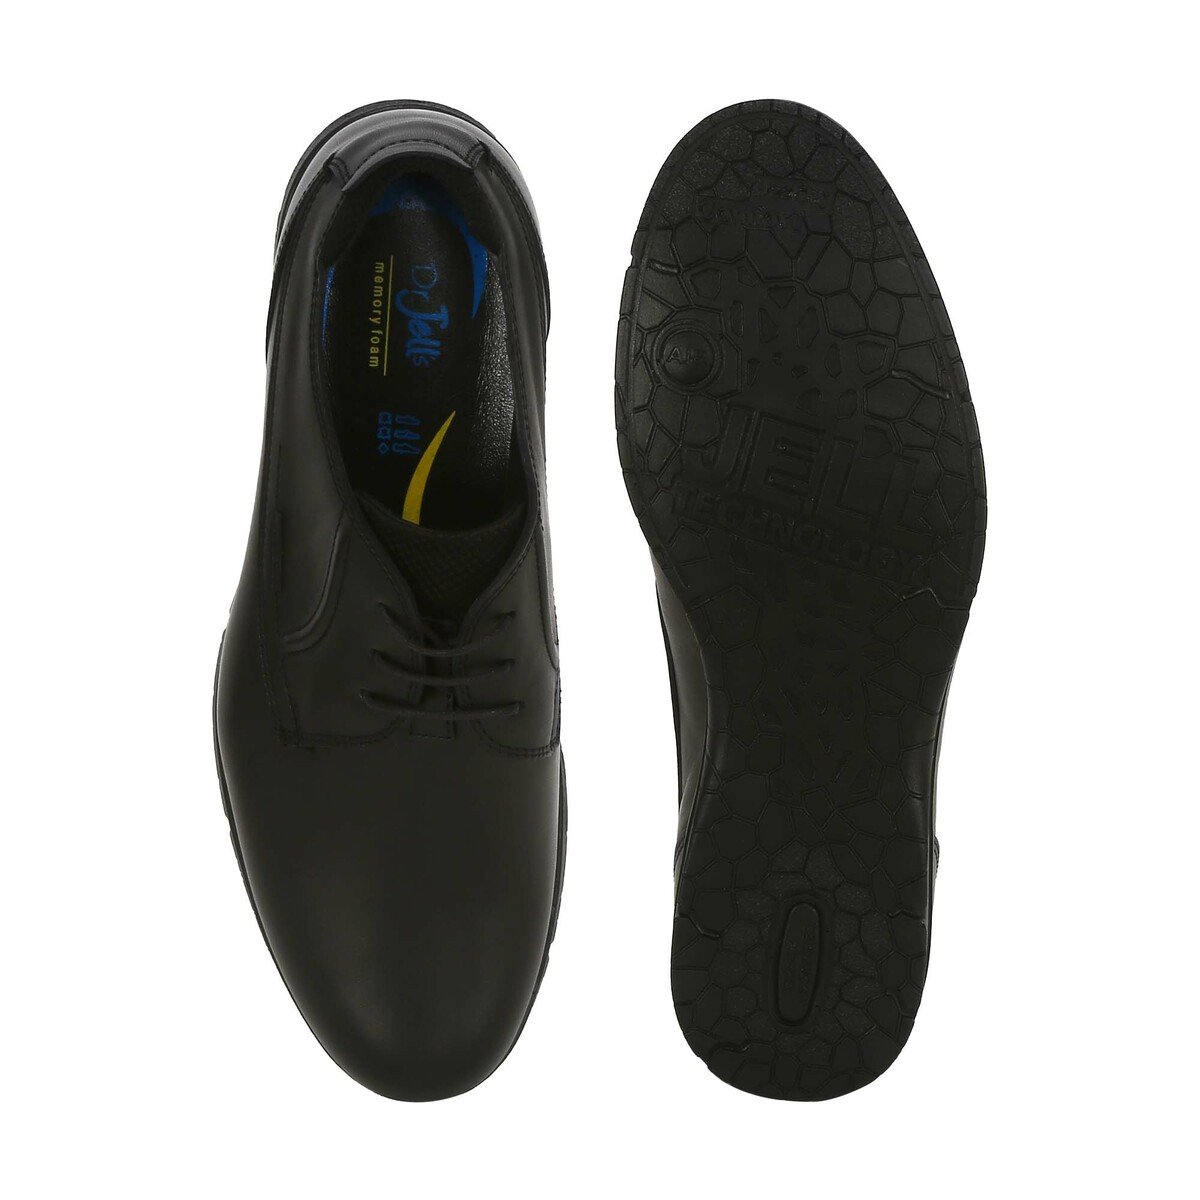 Dr. Jells Men Formal Shoes OY6975-2077 Black, 42 Online at Best Price ...